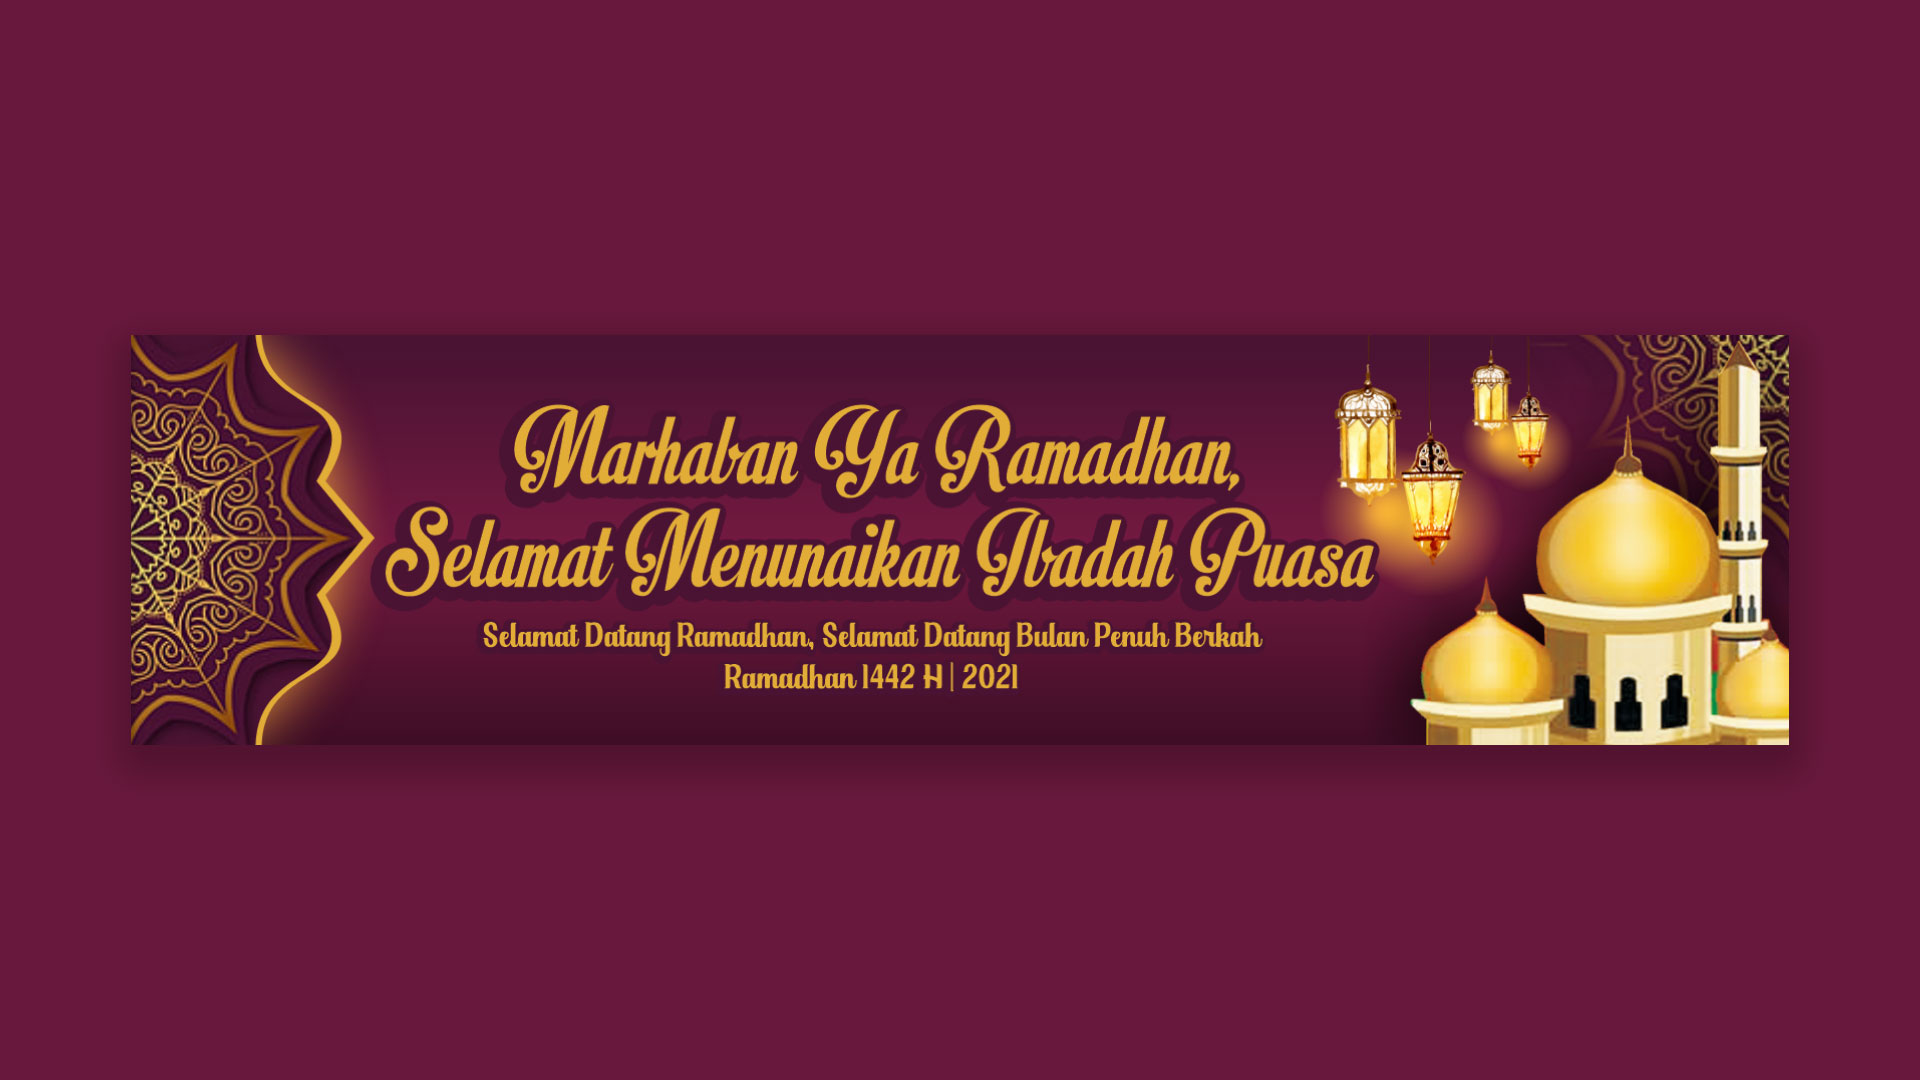 Gratis Download Corel Draw Cdr Desain Spanduk Banner Tema Ramadhan